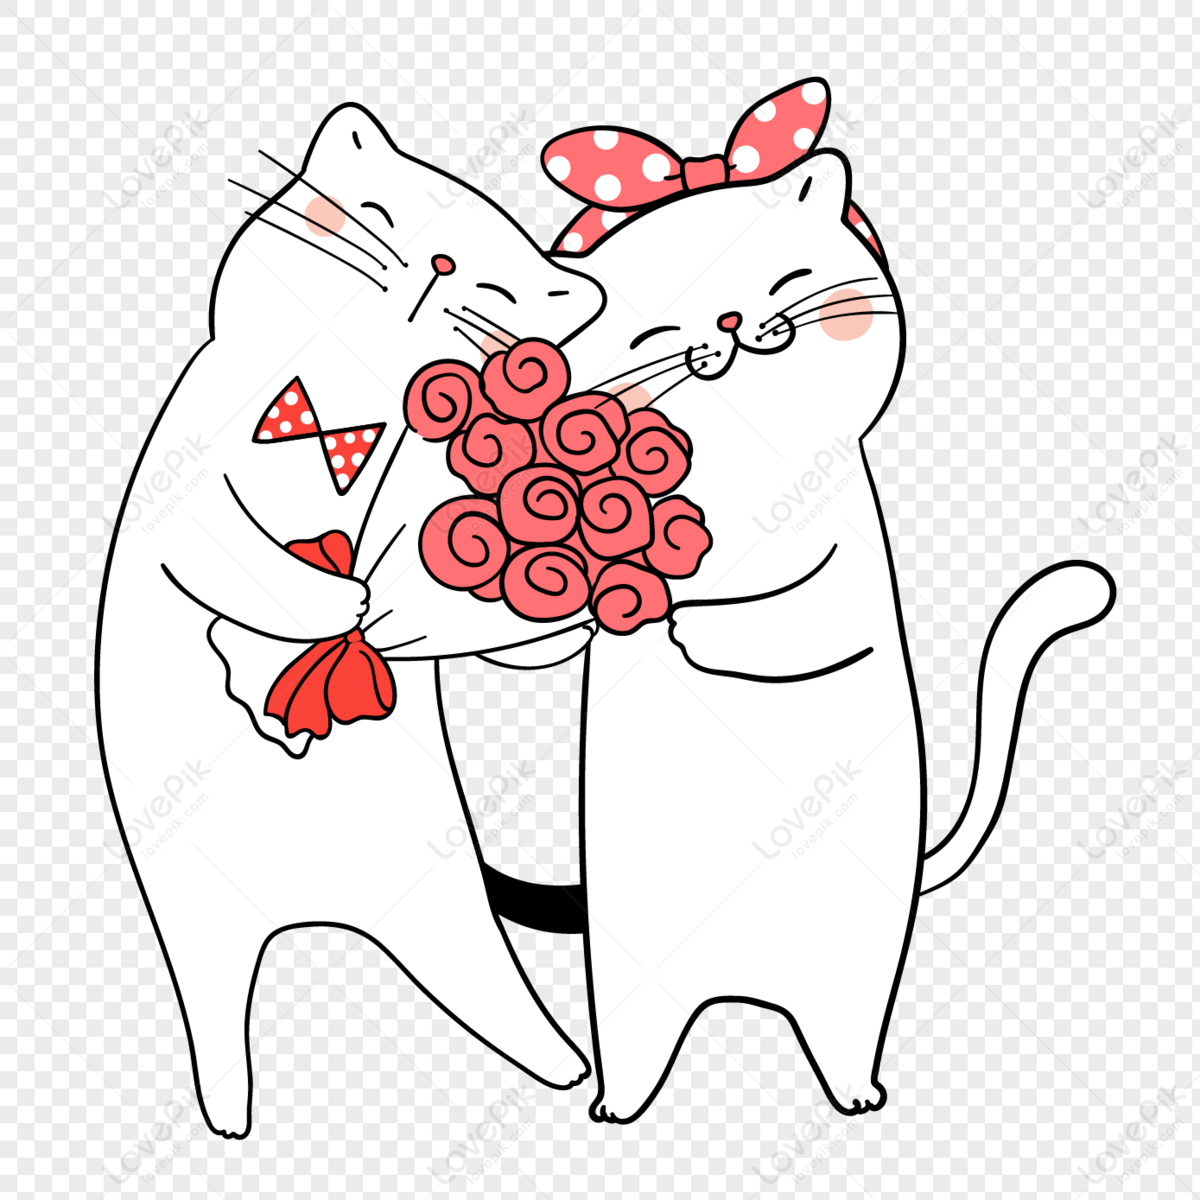 Hãy chào đón ngày lễ tình nhân với hình ảnh của những chú mèo con đáng yêu và những bông hoa hồng tươi sáng! Sự kết hợp này sẽ đem lại không gian tuyệt vời cho người yêu của bạn.